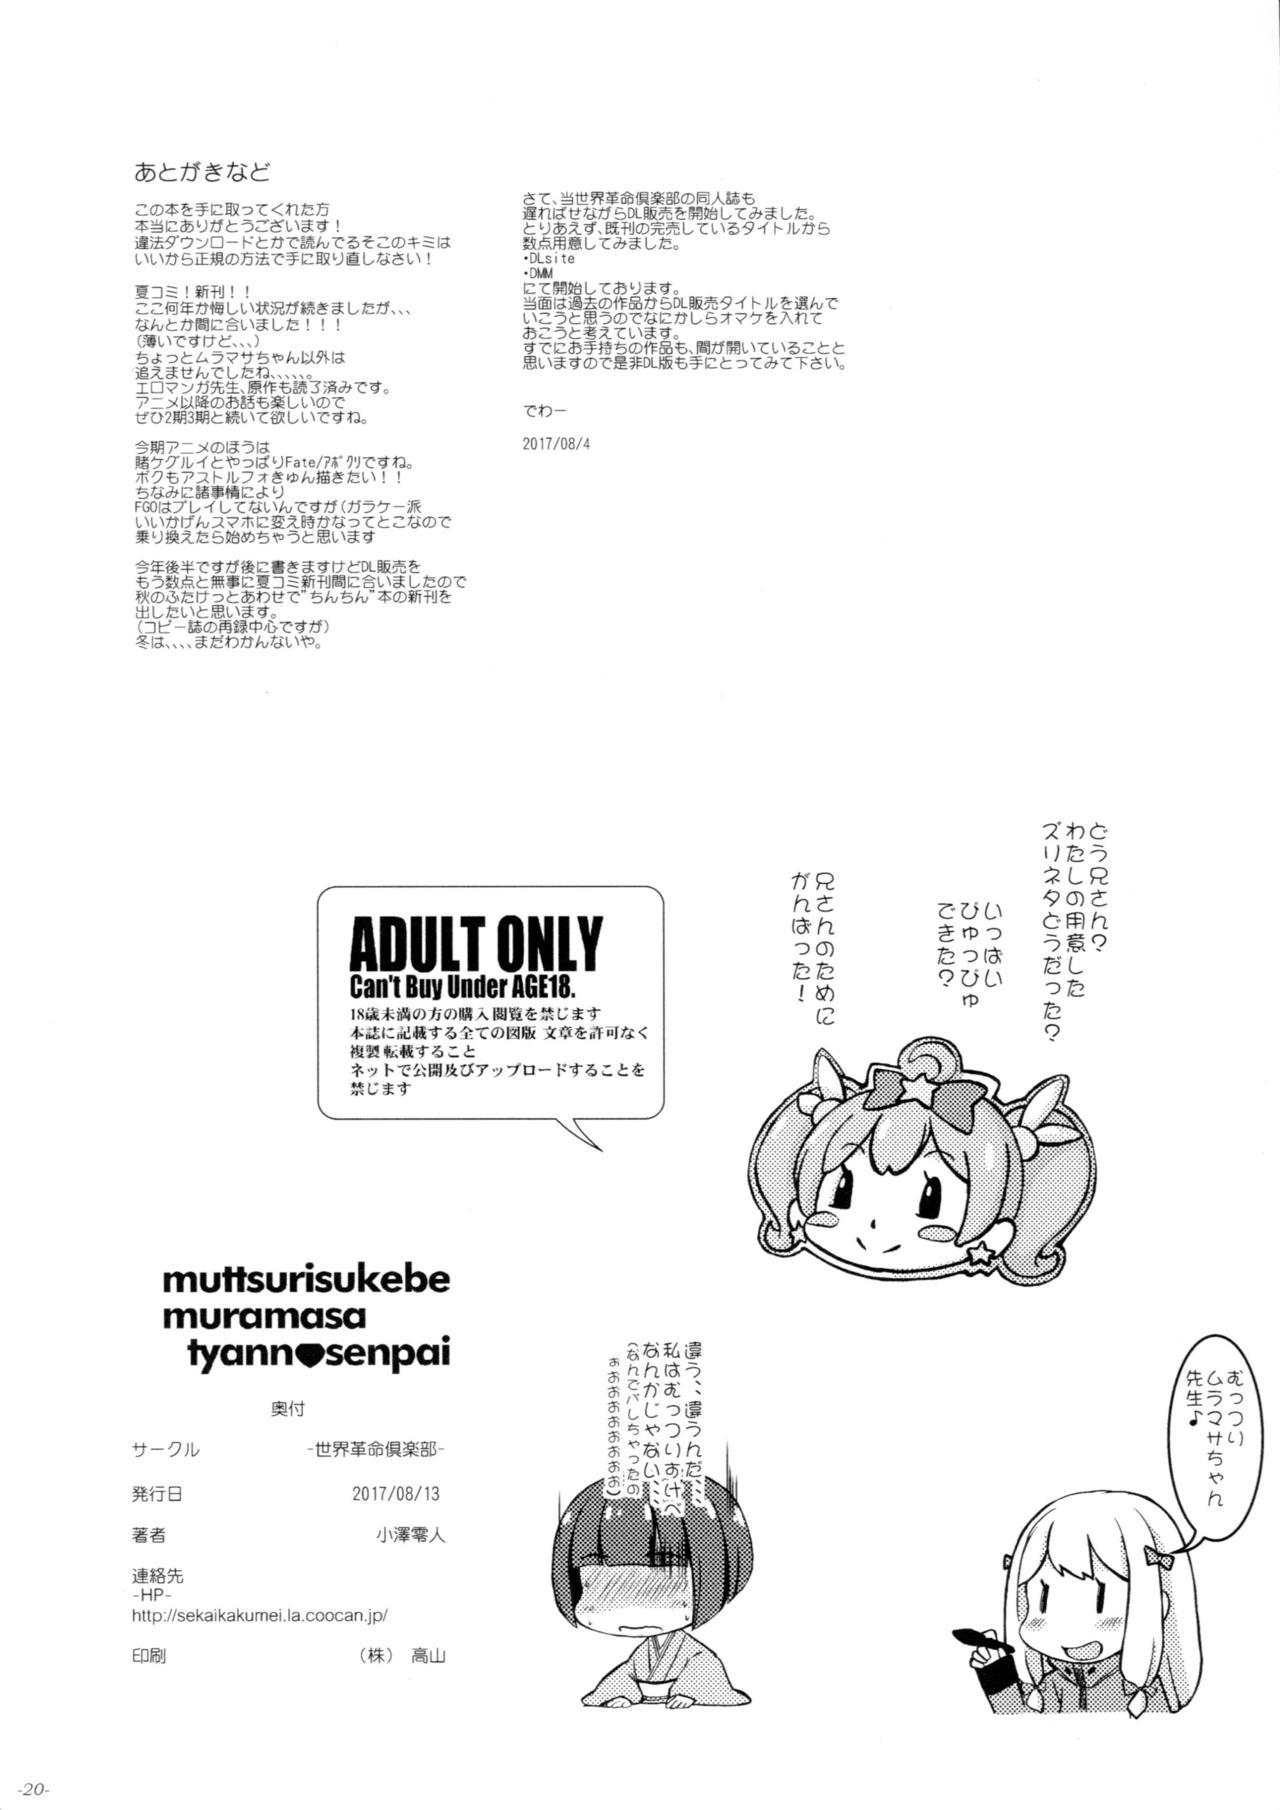 Bisexual Muttsuri Muramasa-chan Senpai - Eromanga sensei Exibicionismo - Page 21